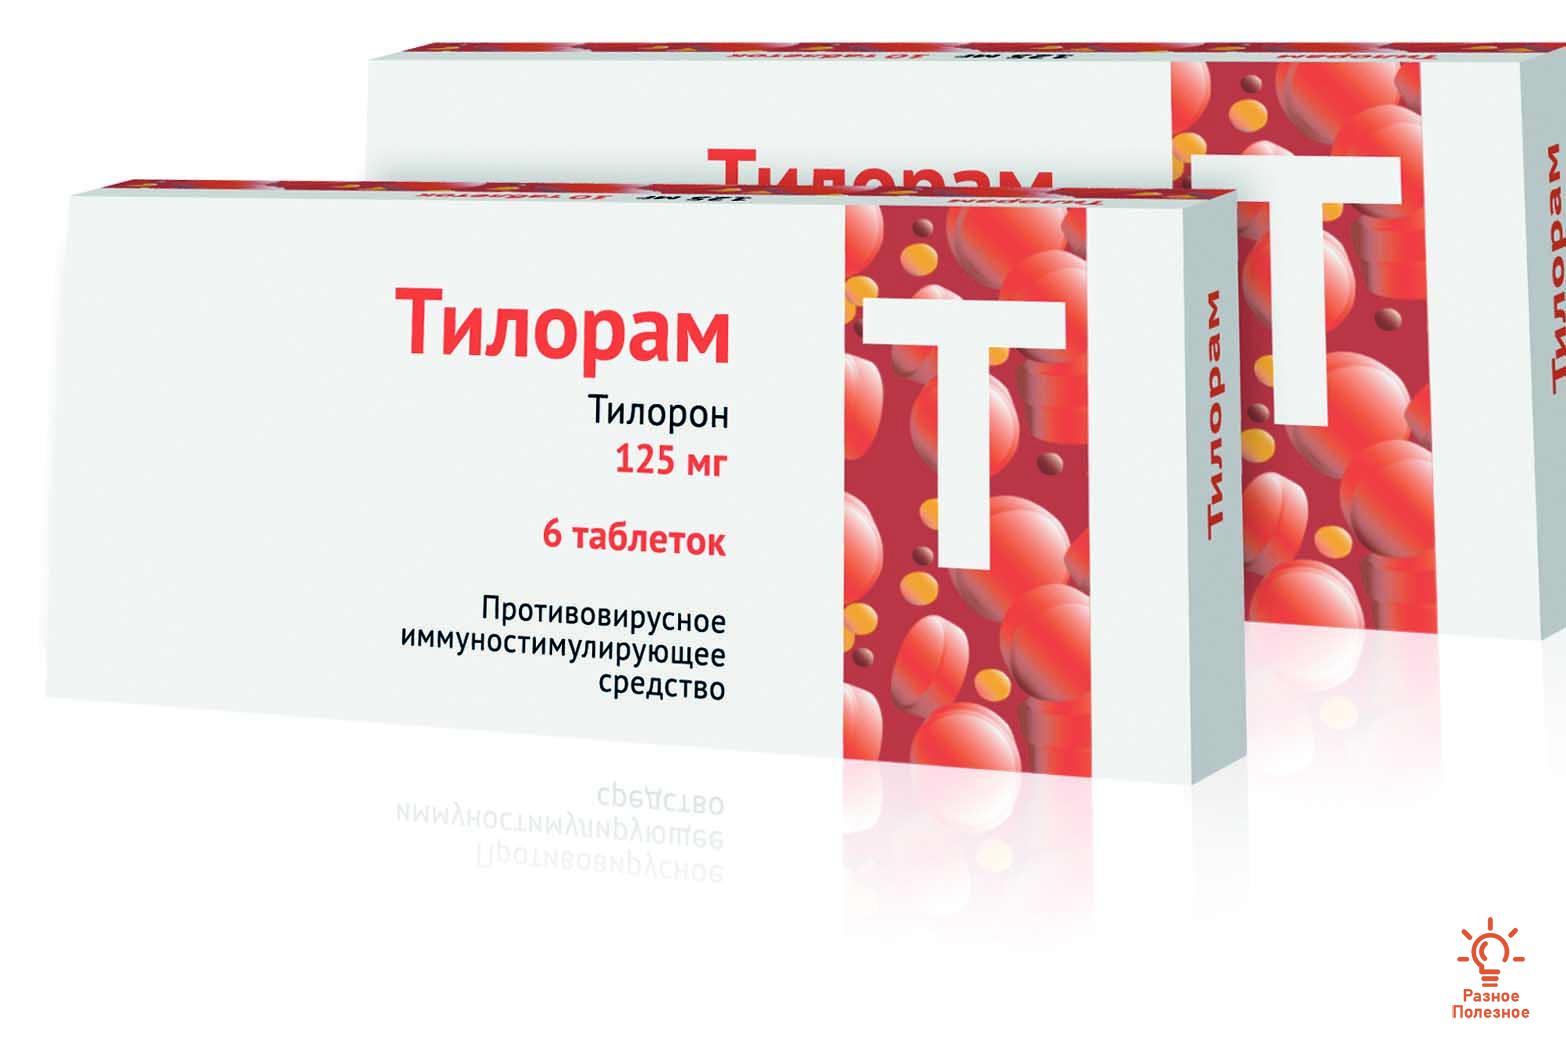 Тилорам – иммуностимулирующее противовирусное средство